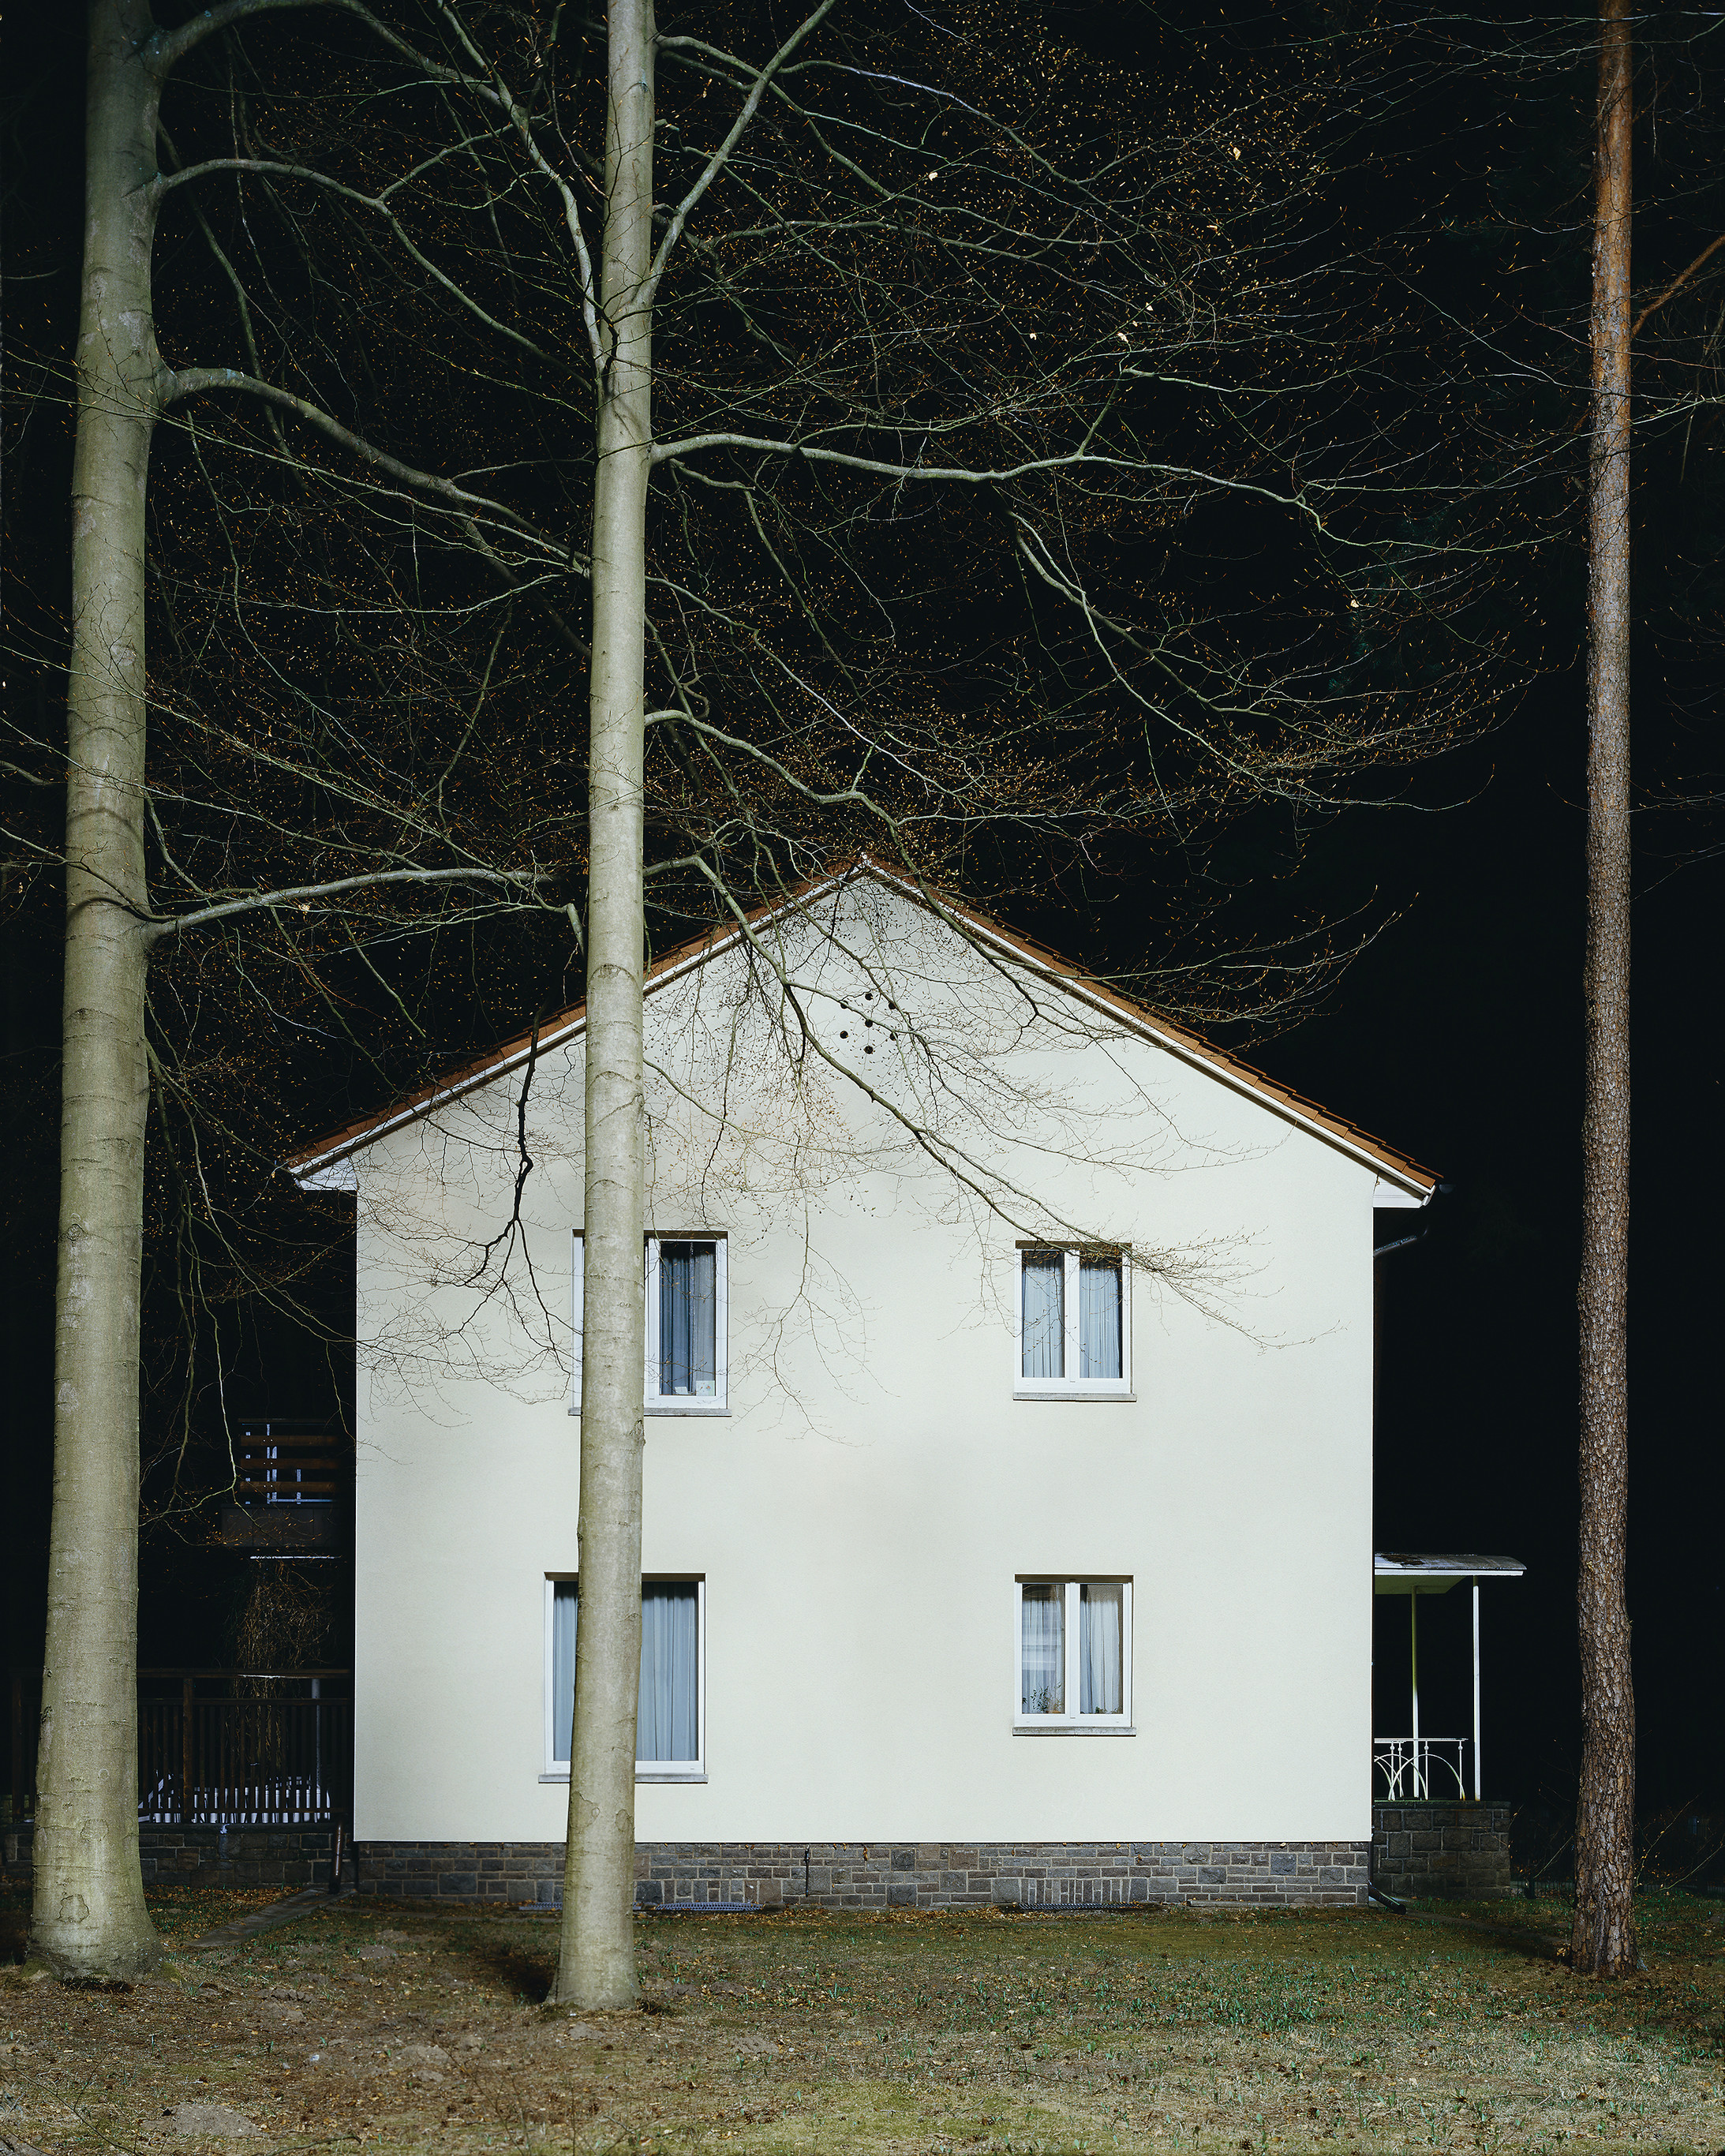 Waldsiedlung (2011), aus der Serie: Wandlitz
© Andreas Mühe / VG Bild-Kunst, Bonn